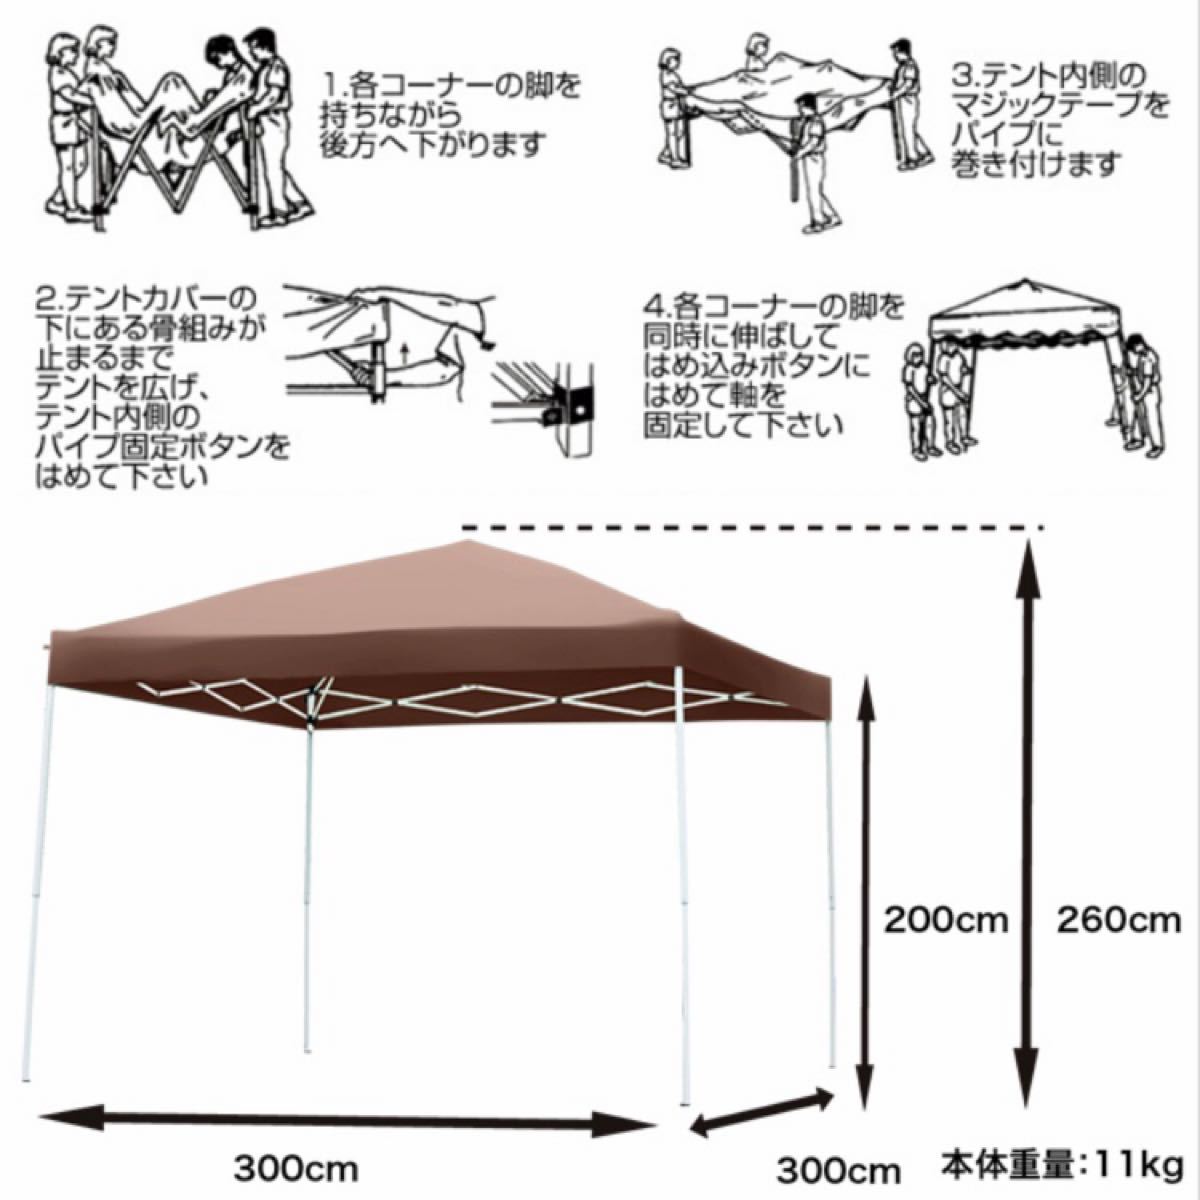 タープテント 【茶】 3×3m ワンタッチ UV加工 専用バッグ付 キャンプ